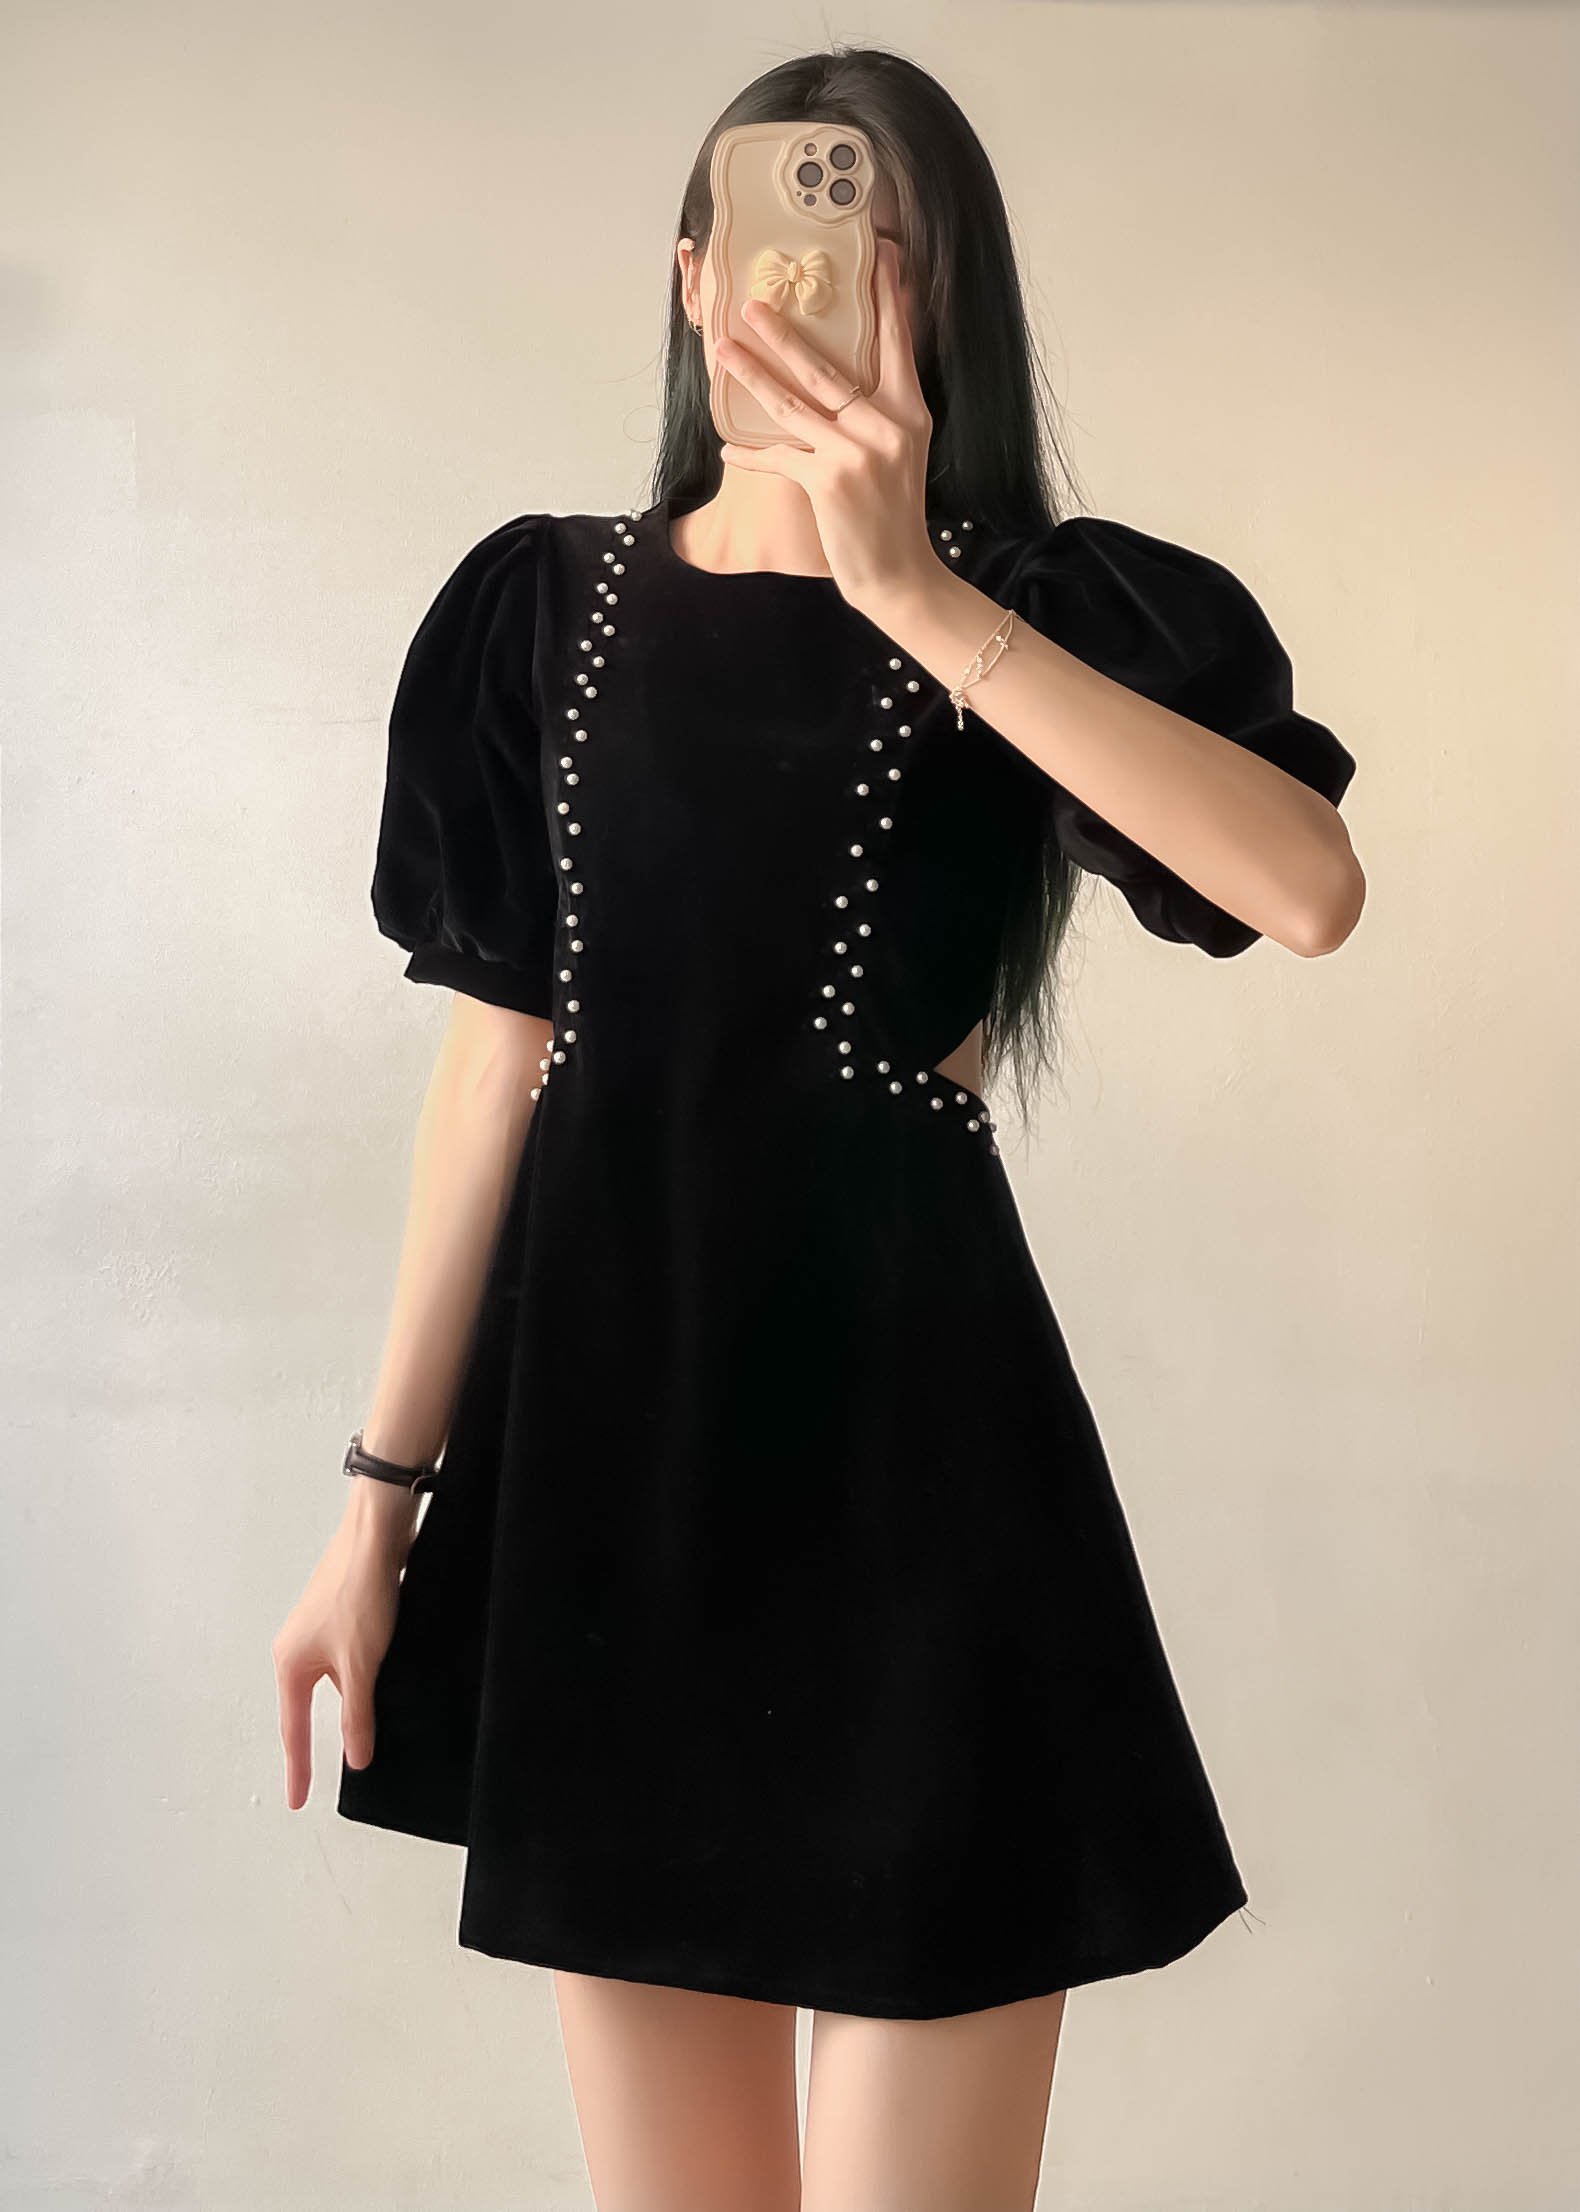 Váy nhung đen cut out Vaynhung177_ 